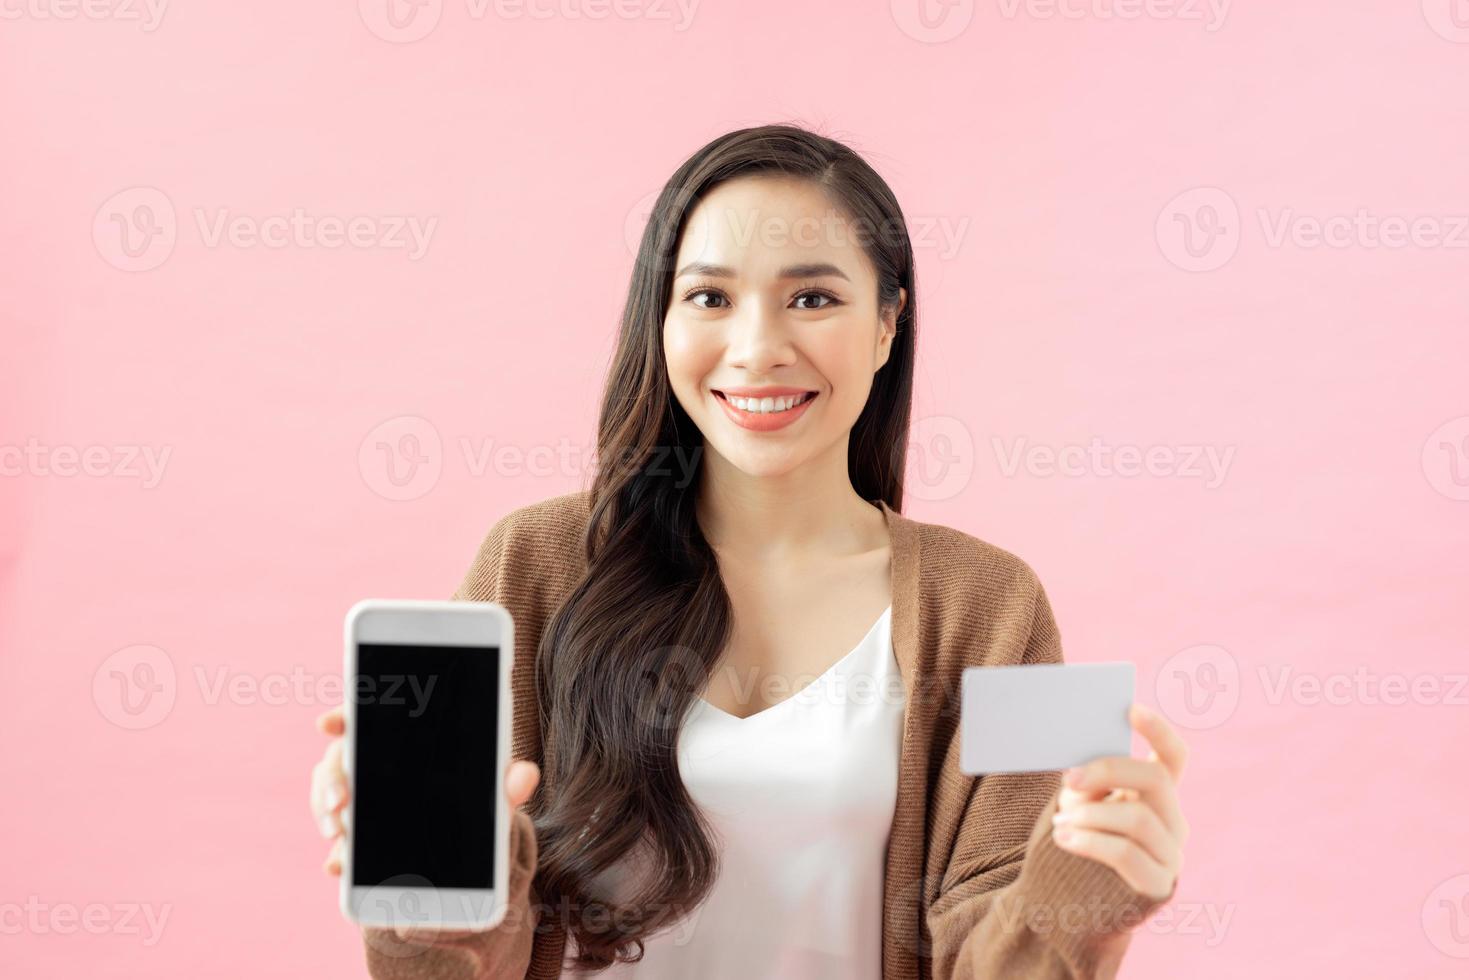 conceito de comércio eletrônico, compras e estilo de vida. menina asiática encontrou um aplicativo incrível para compras on-line, rastreamento de pedidos, segurando o celular, tela de exibição e cartão de crédito foto